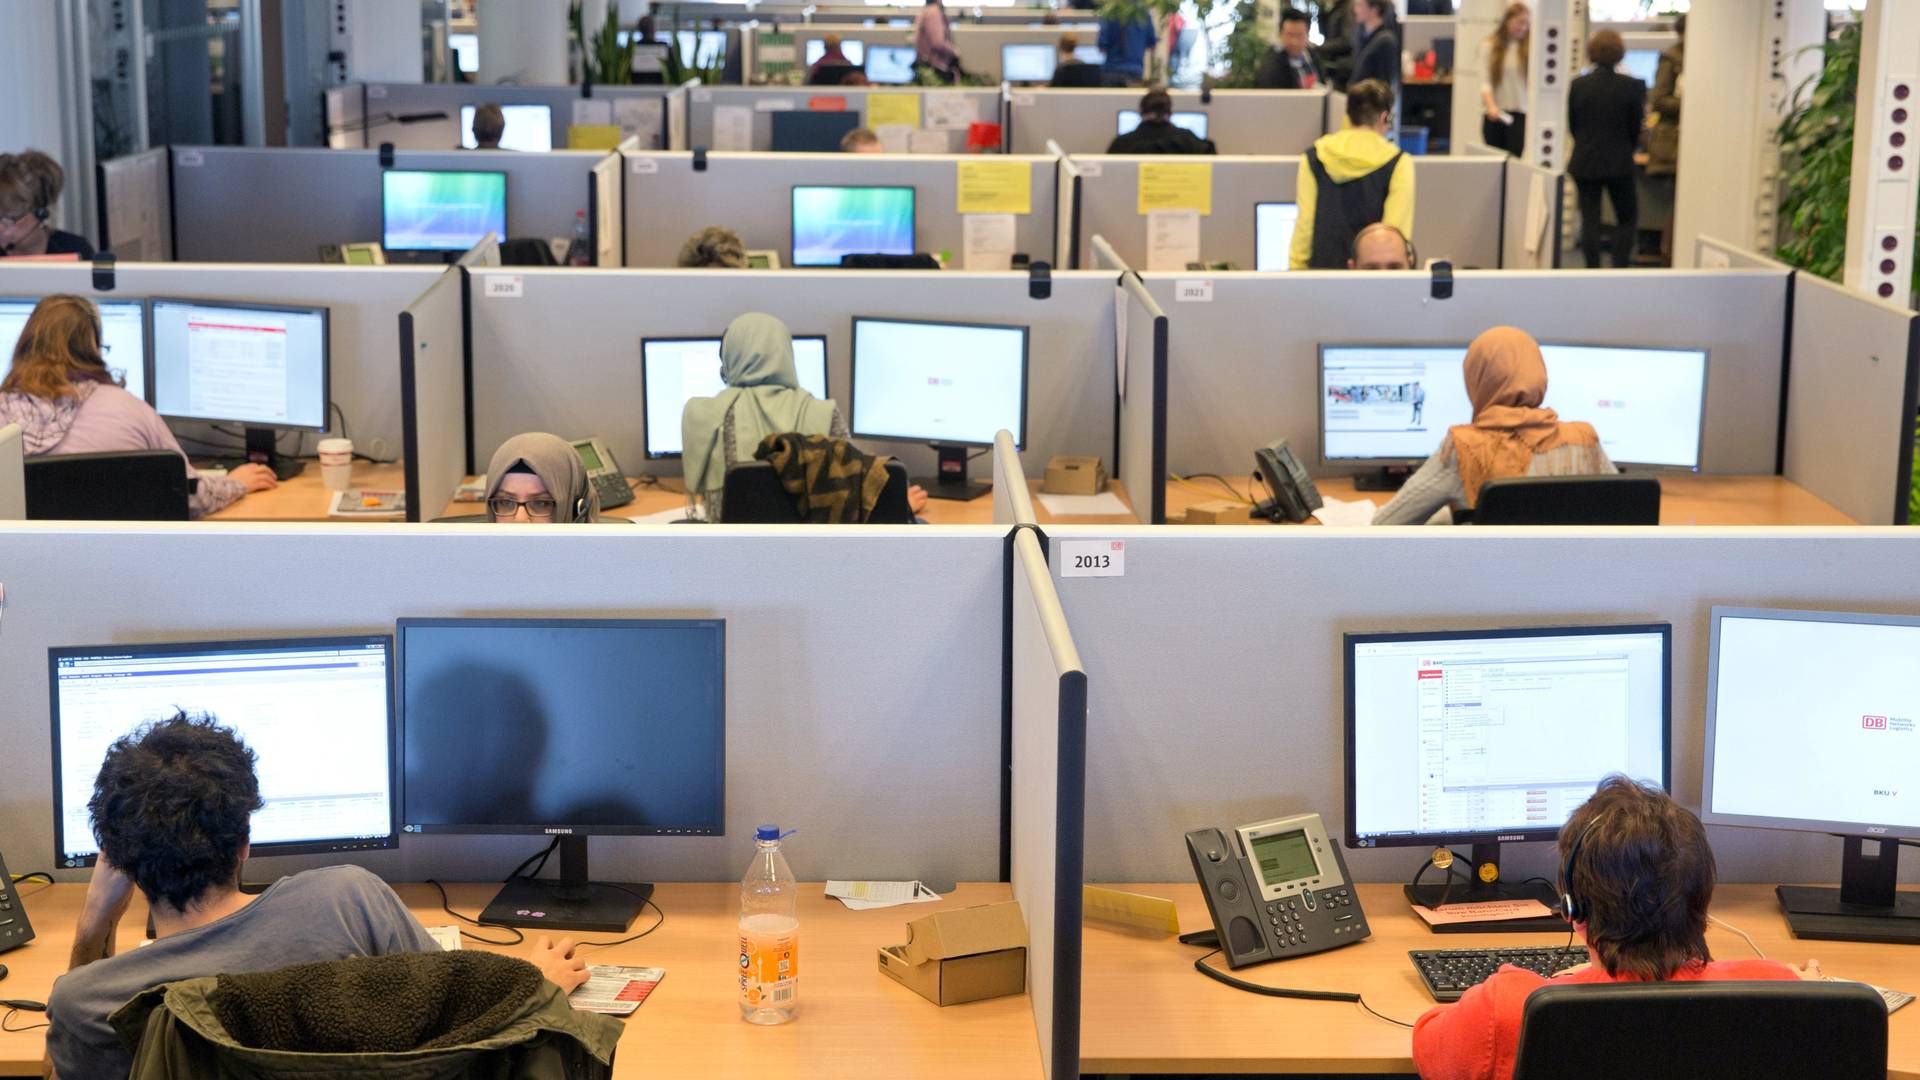 Mødebookere, der arbejder i et callcenter er et vigtigt element i pensionsmæglervirksomheden APC' forretningskoncept. Arkivfoto: Jörg Carstensen/AP/Ritzau Scanpix | Foto: Jörg Carstensen/AP/Ritzau Scanpix